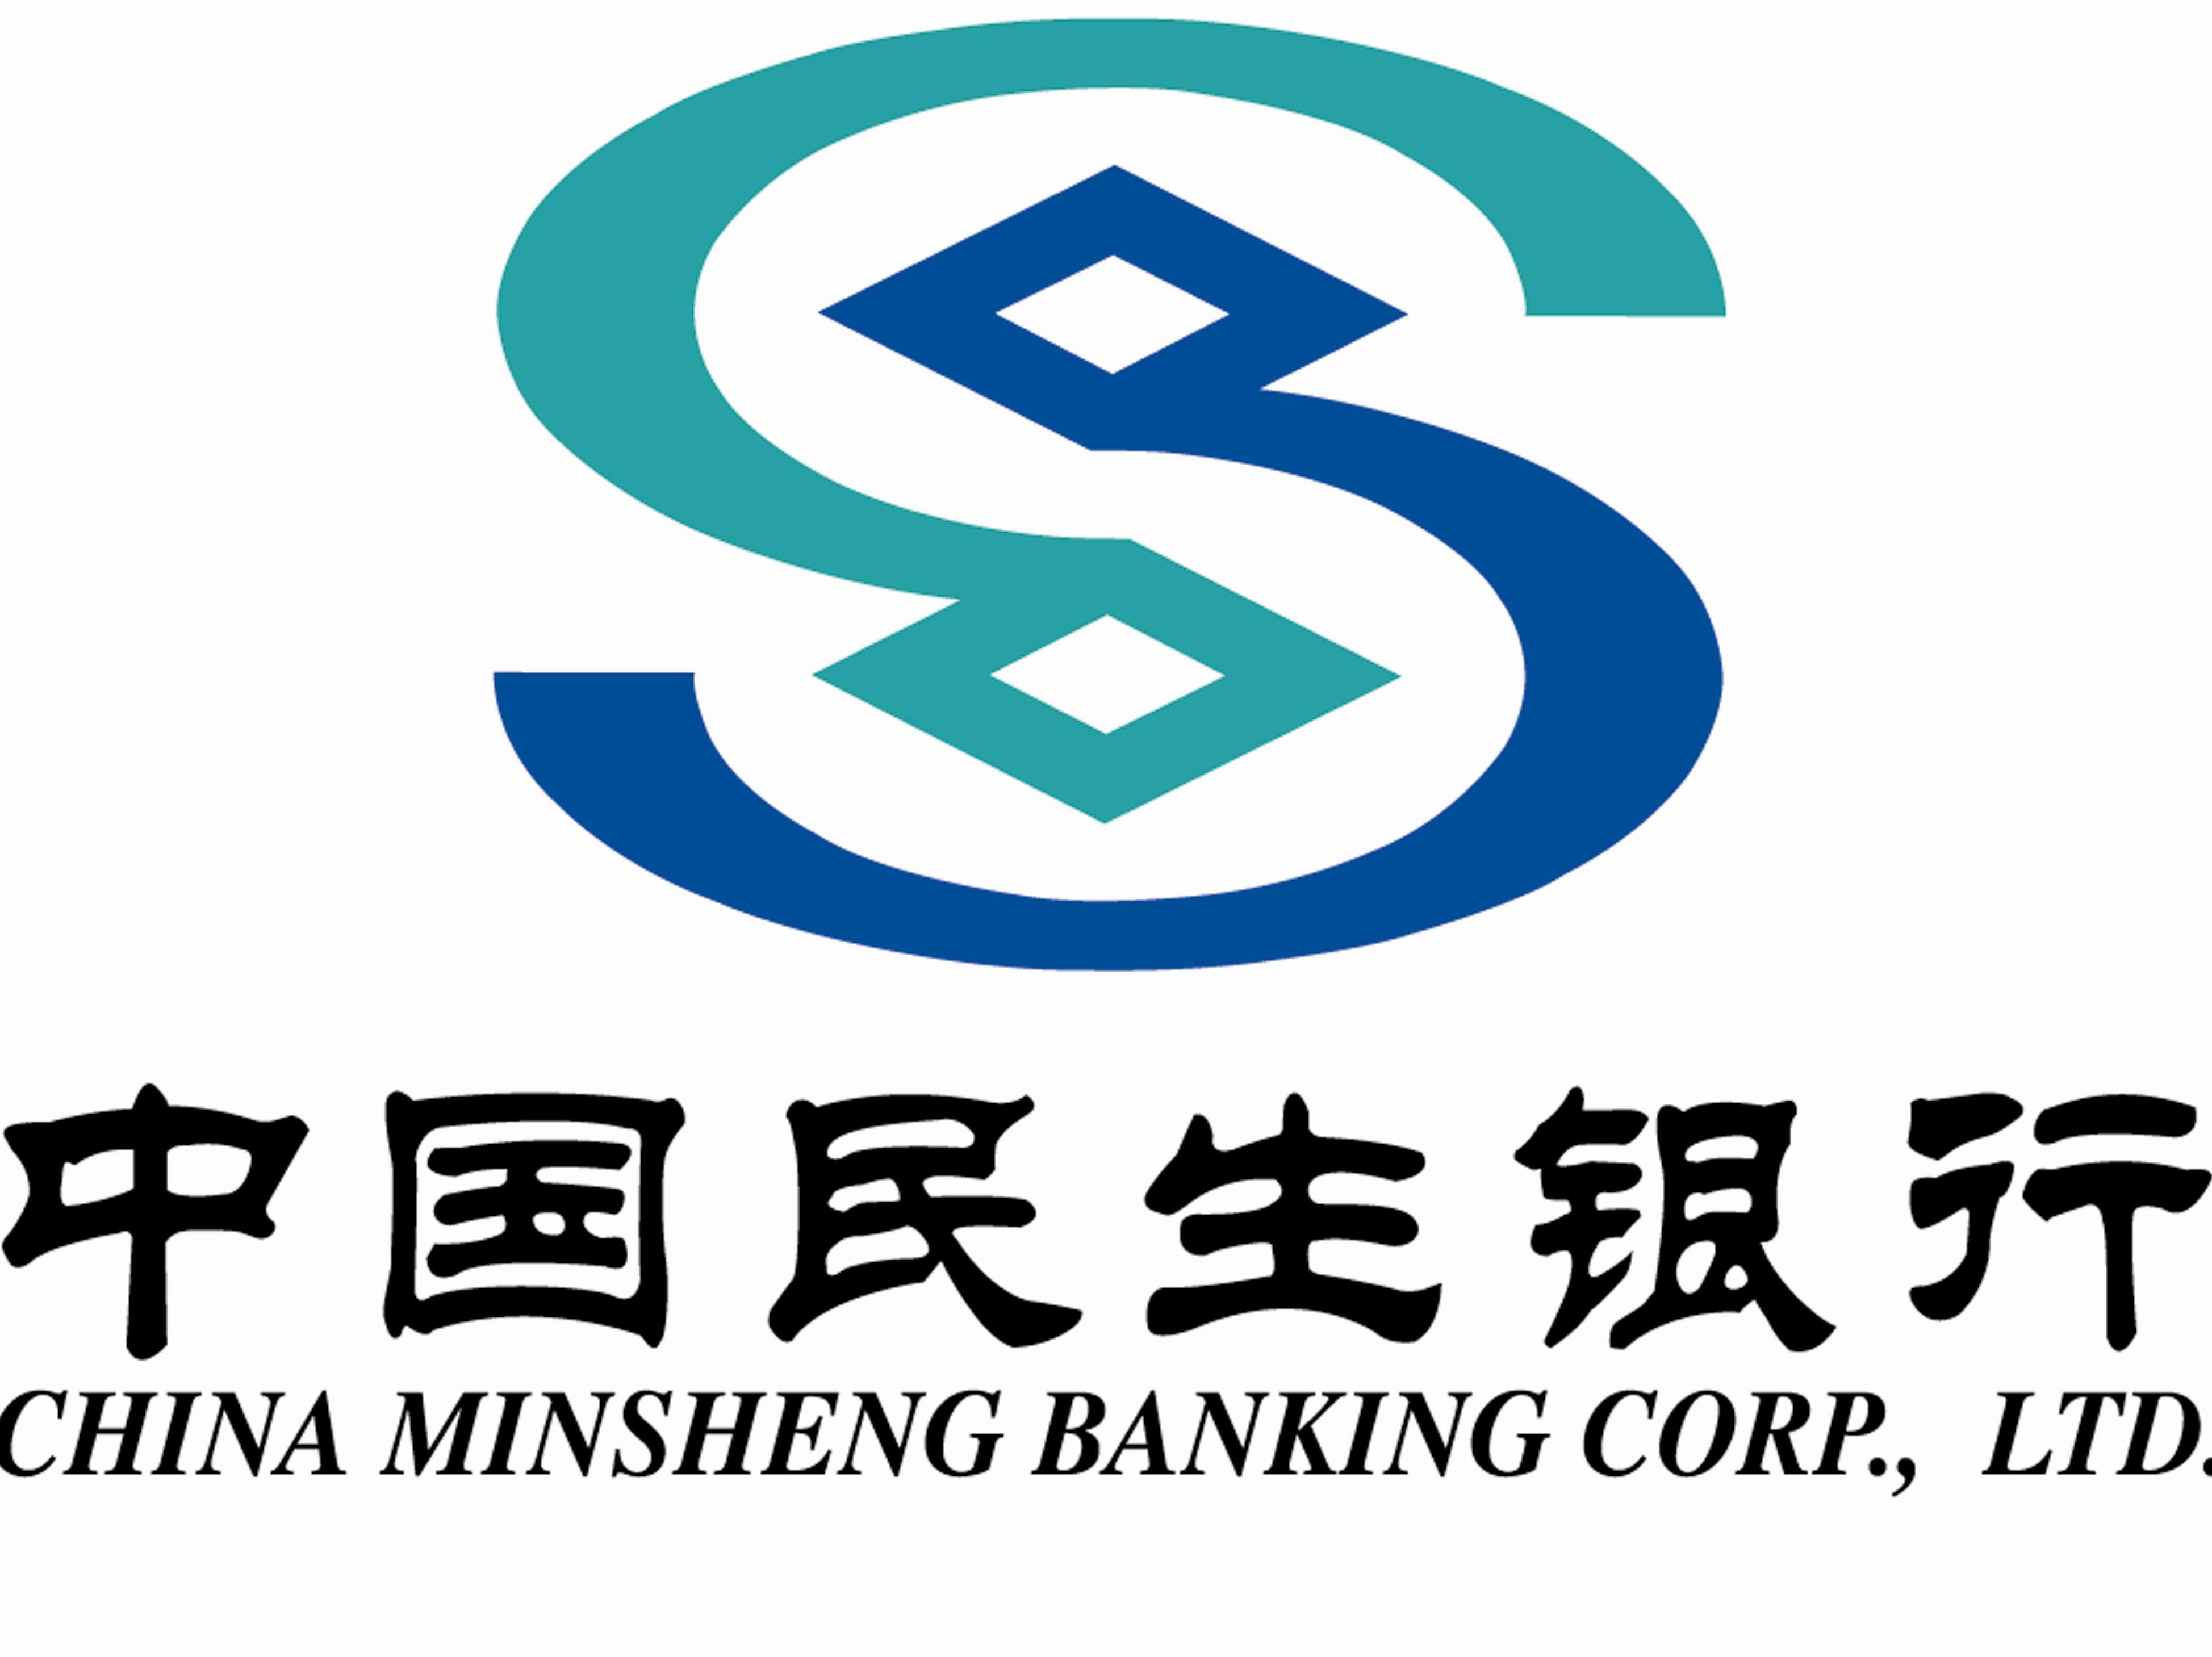 民生银行logo图片高清图片